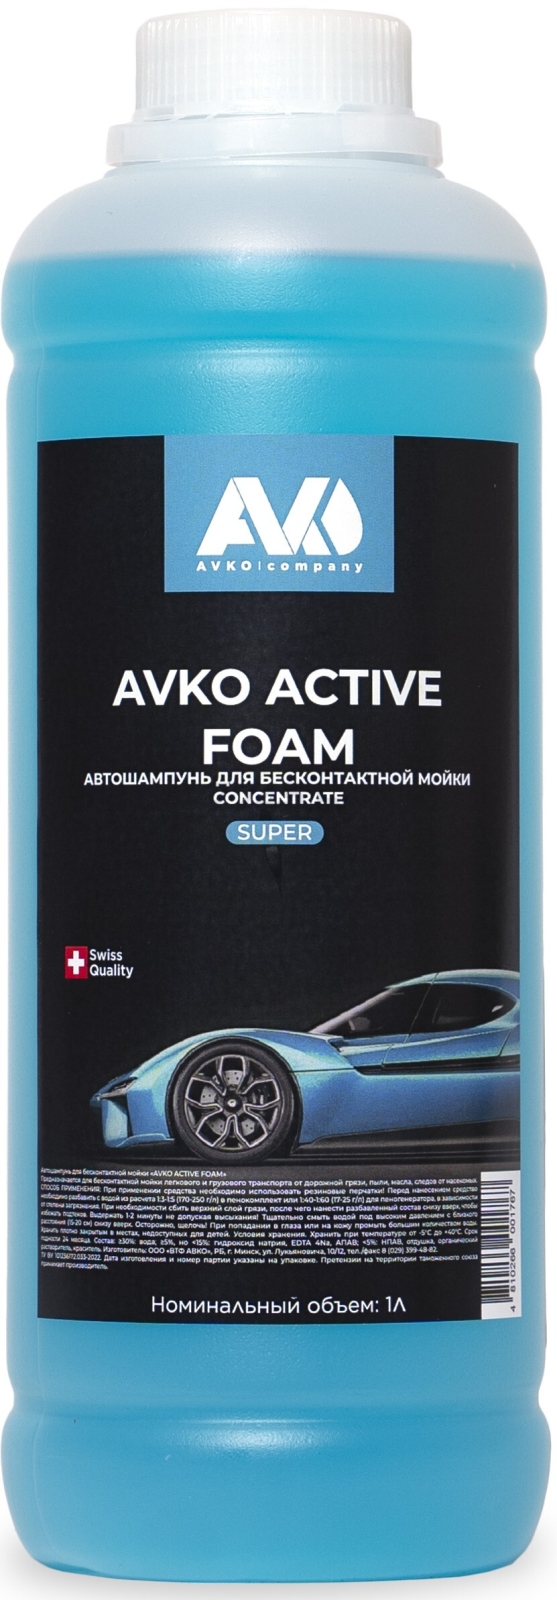 Автошампунь для бесконтактной мойки AVKO Active Foam Super 1 л